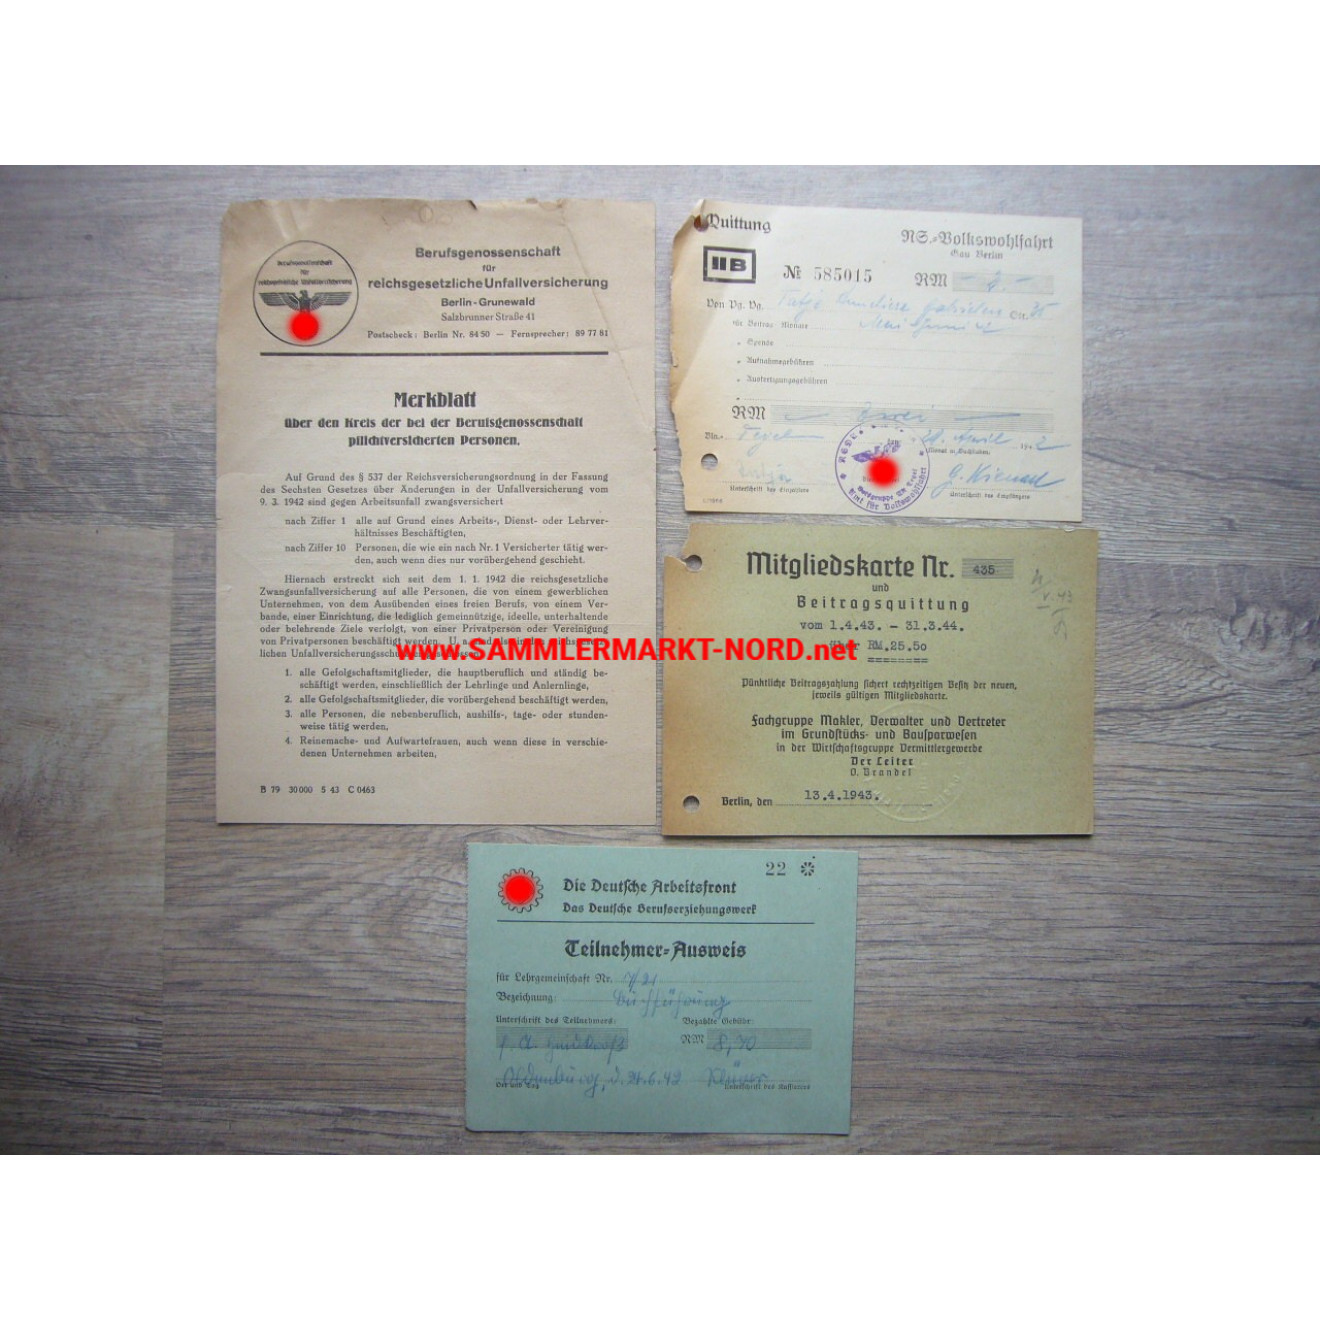 4 x document / ID card DAF, NSV etc.